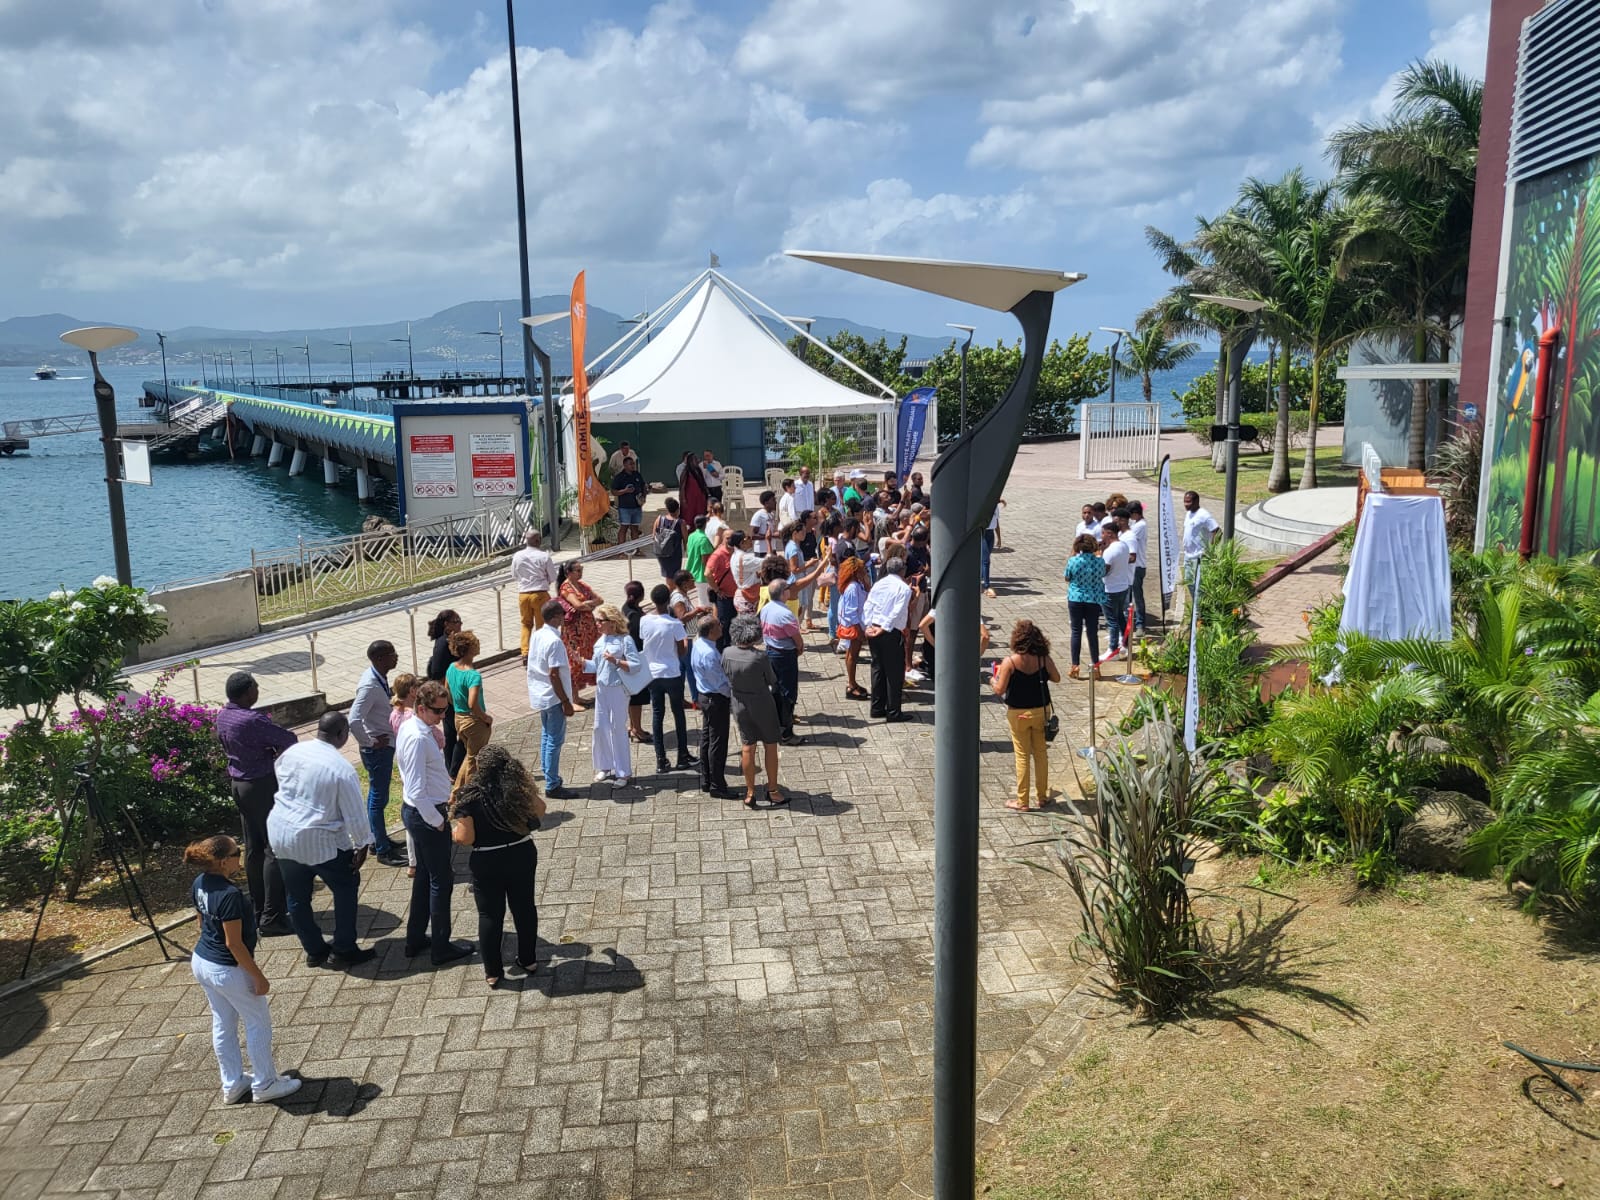     Les bateaux de croisière sont de retour en Martinique

